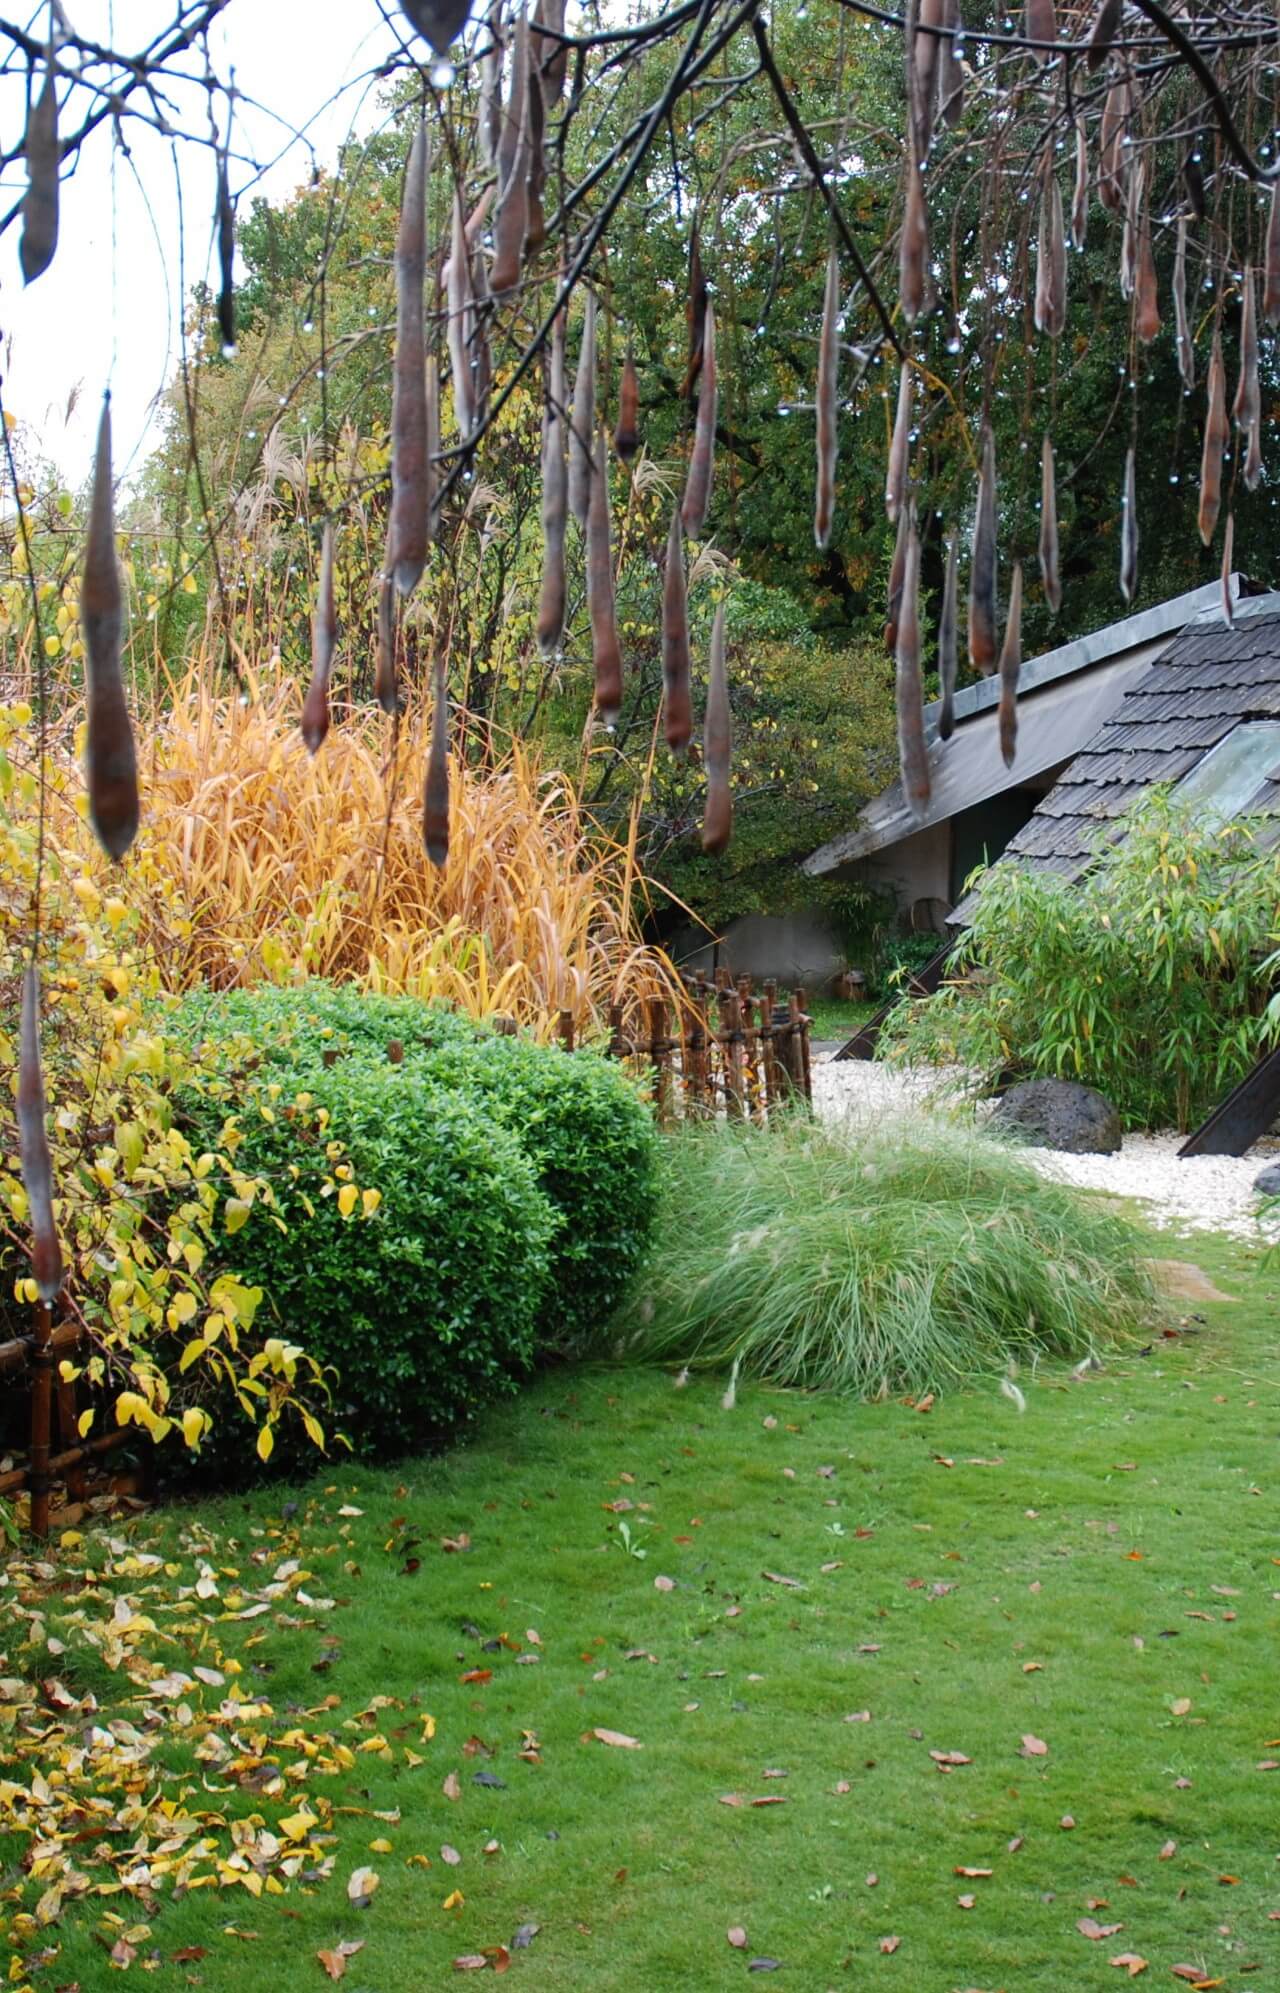 Couleur et feuilles jardin d’automne, clôture et treille en bambou d’inspiration japonaise, graines de glycine, jardin écologique.